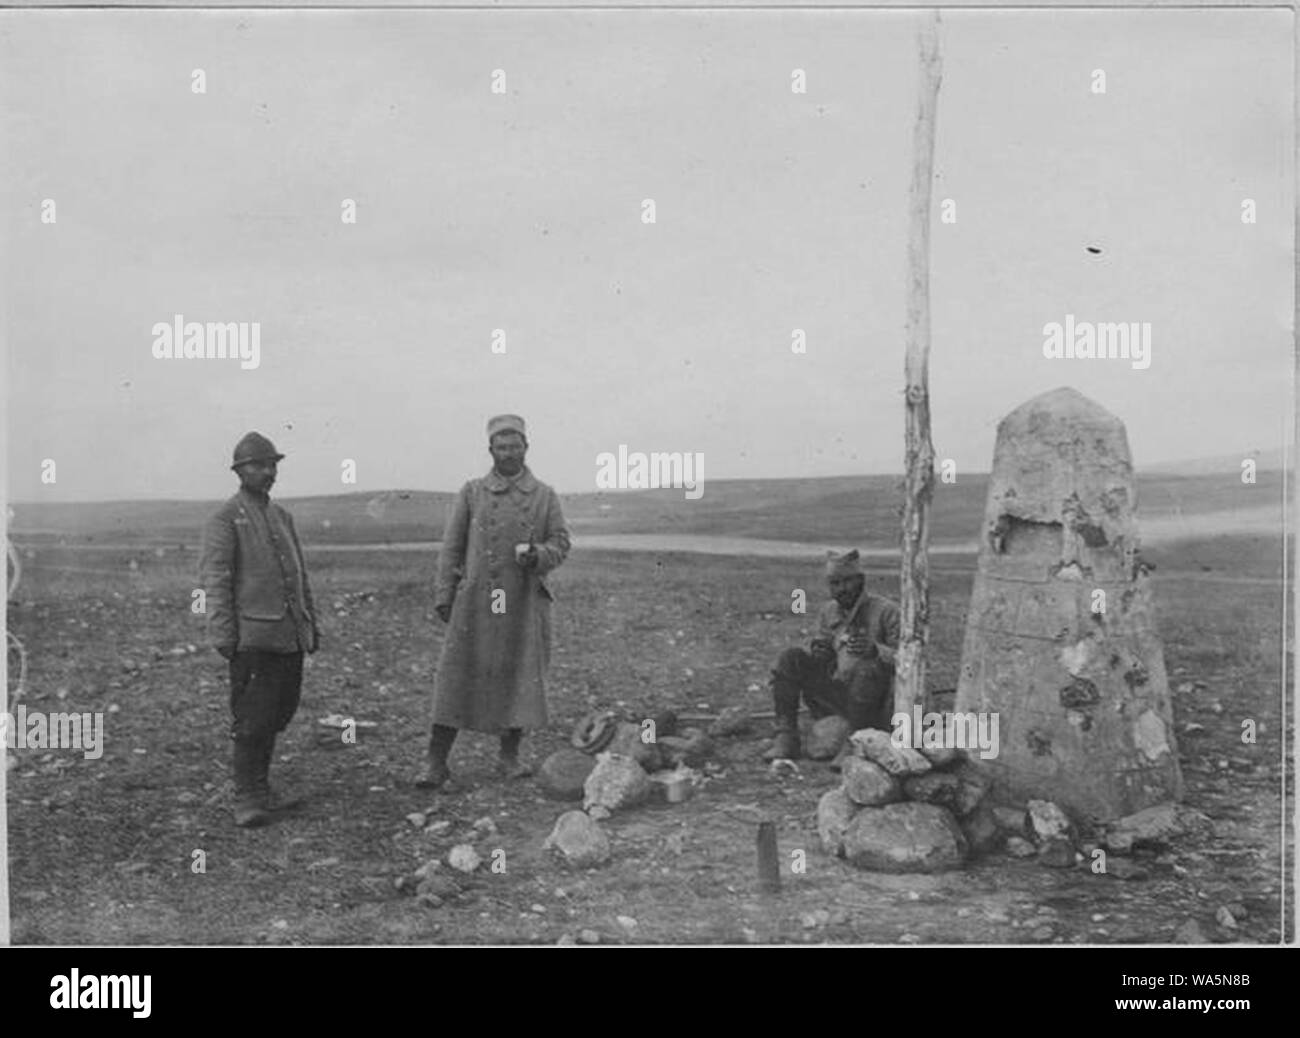 DJivonian novembre 1916). Soldats serbes Près d'une borne frontière de la Serbie. Foto Stock